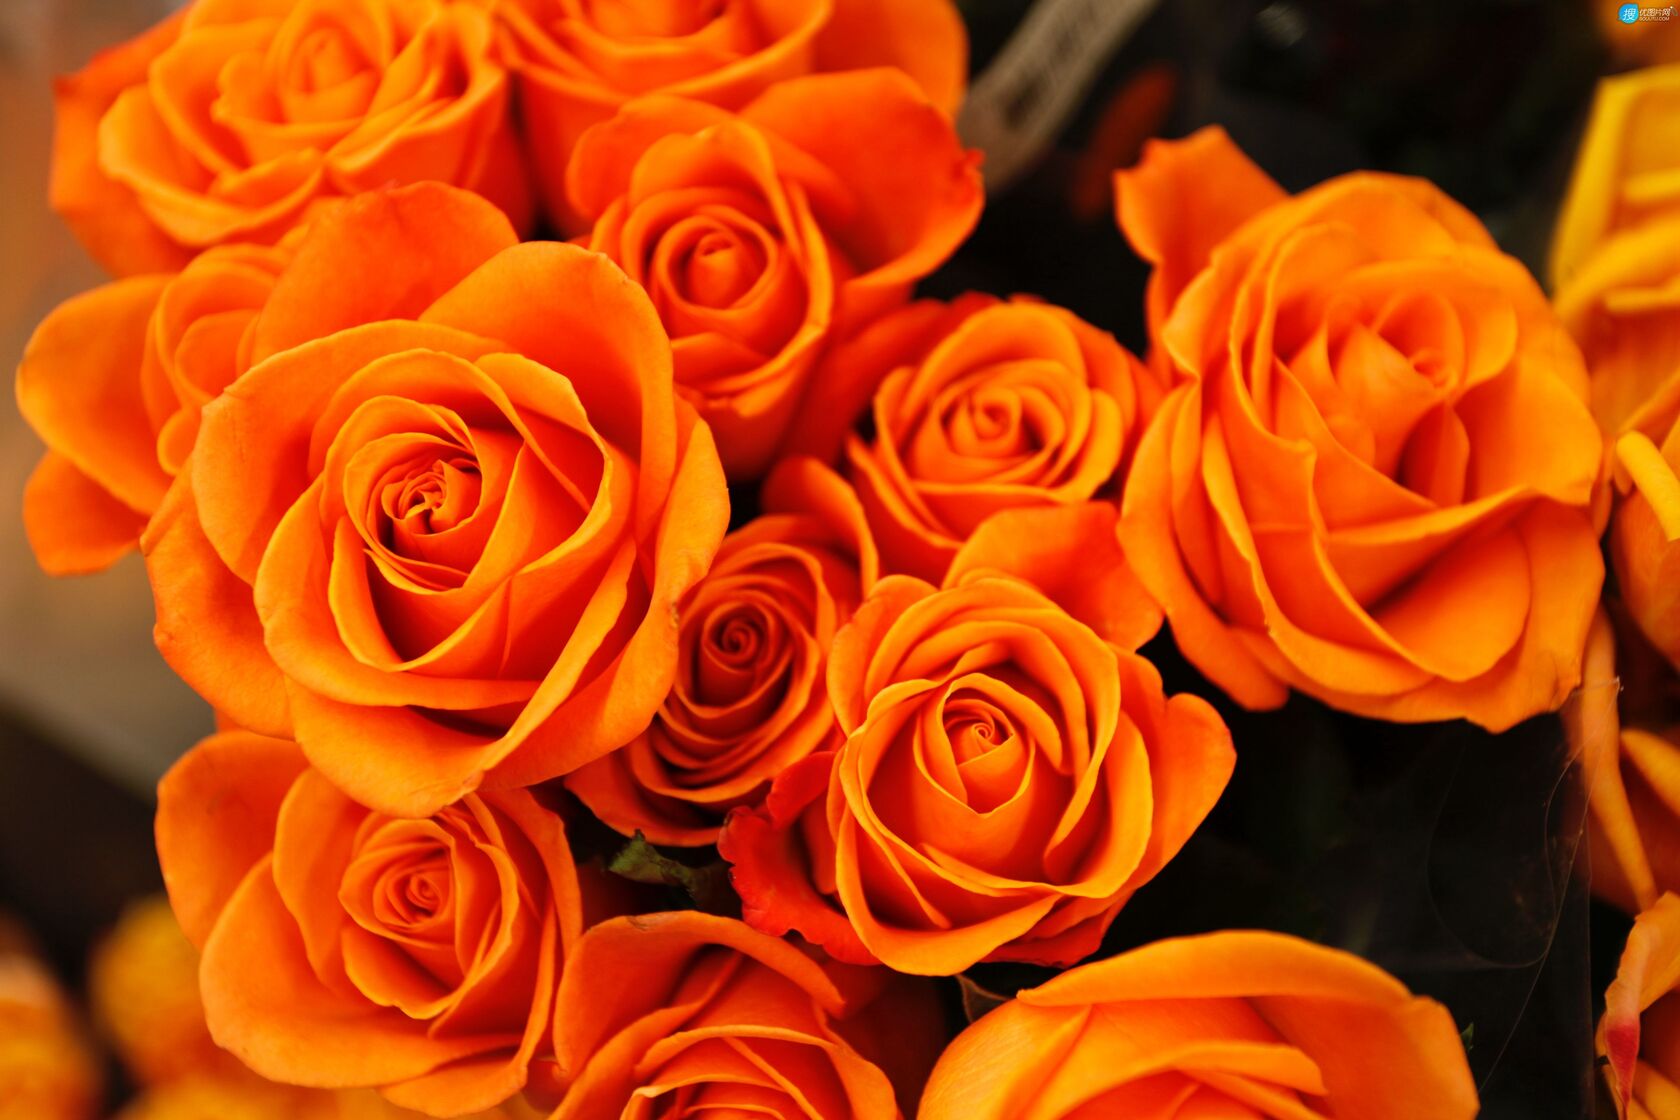 橙色的玫瑰花束壁纸图片第1张图片